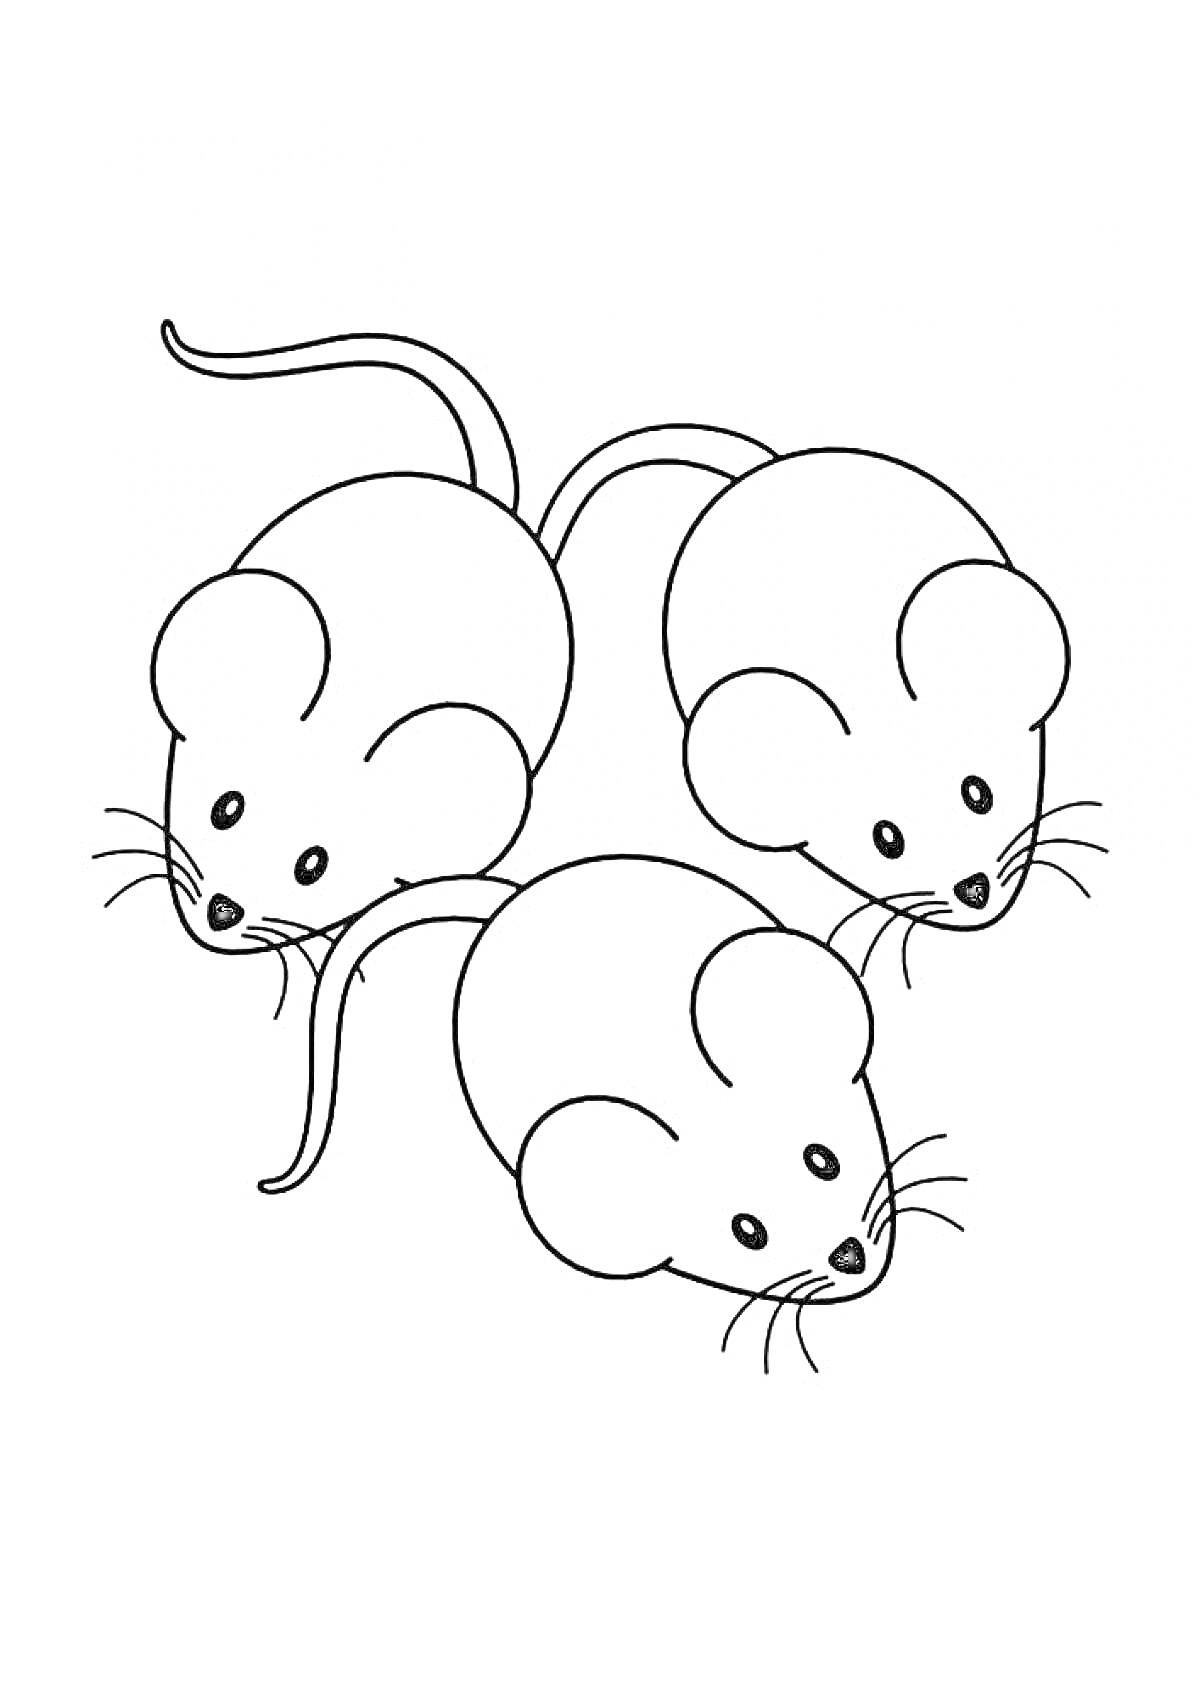 Раскраска Три мыши с длинными хвостами